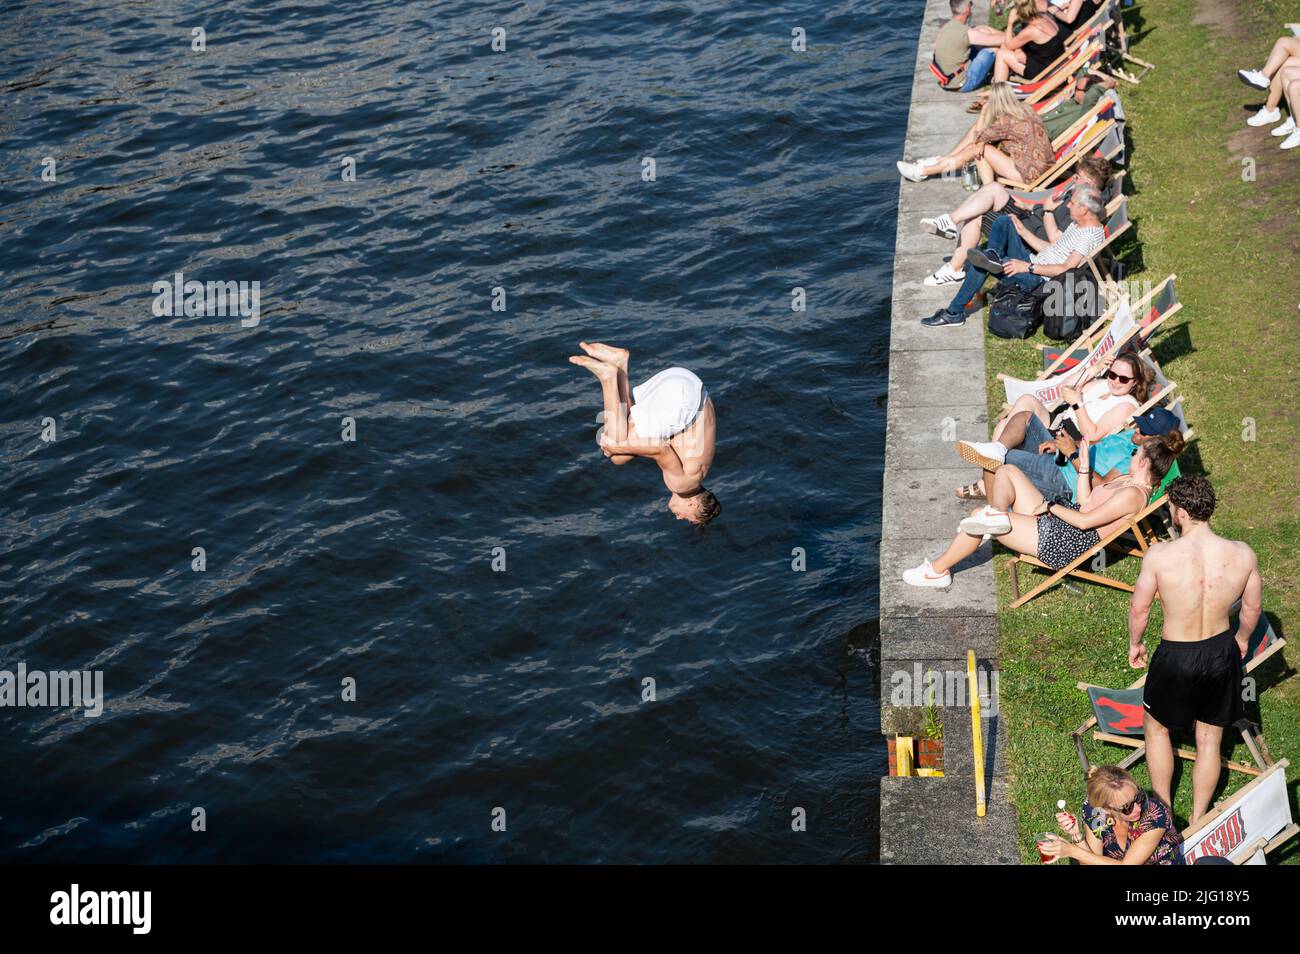 03.07.2022, Berlin, Deutschland, Europa - Ein junger Mann springt mit einem Backflip vom Spreeufer neben einer Strandbar ins kühle Nass. Stockfoto